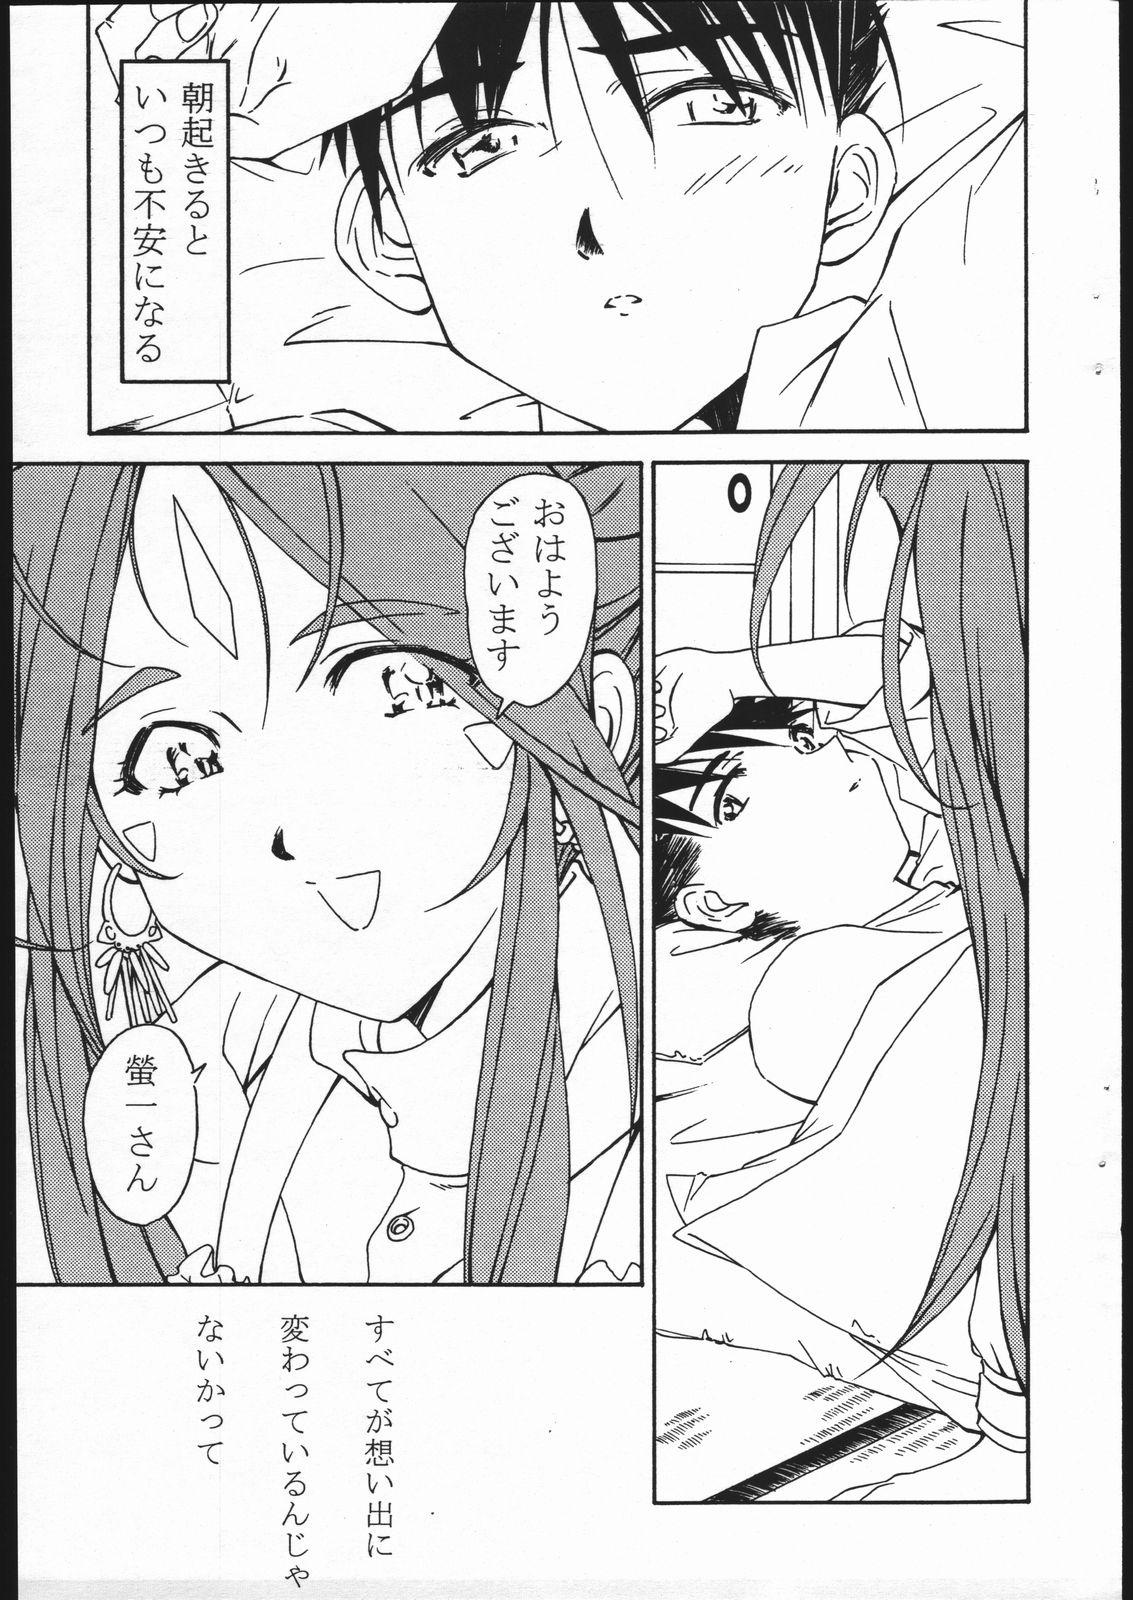 Fetish Ohayou Gozaimasu! Megami-sama! - Ah my goddess Rabuda - Page 2